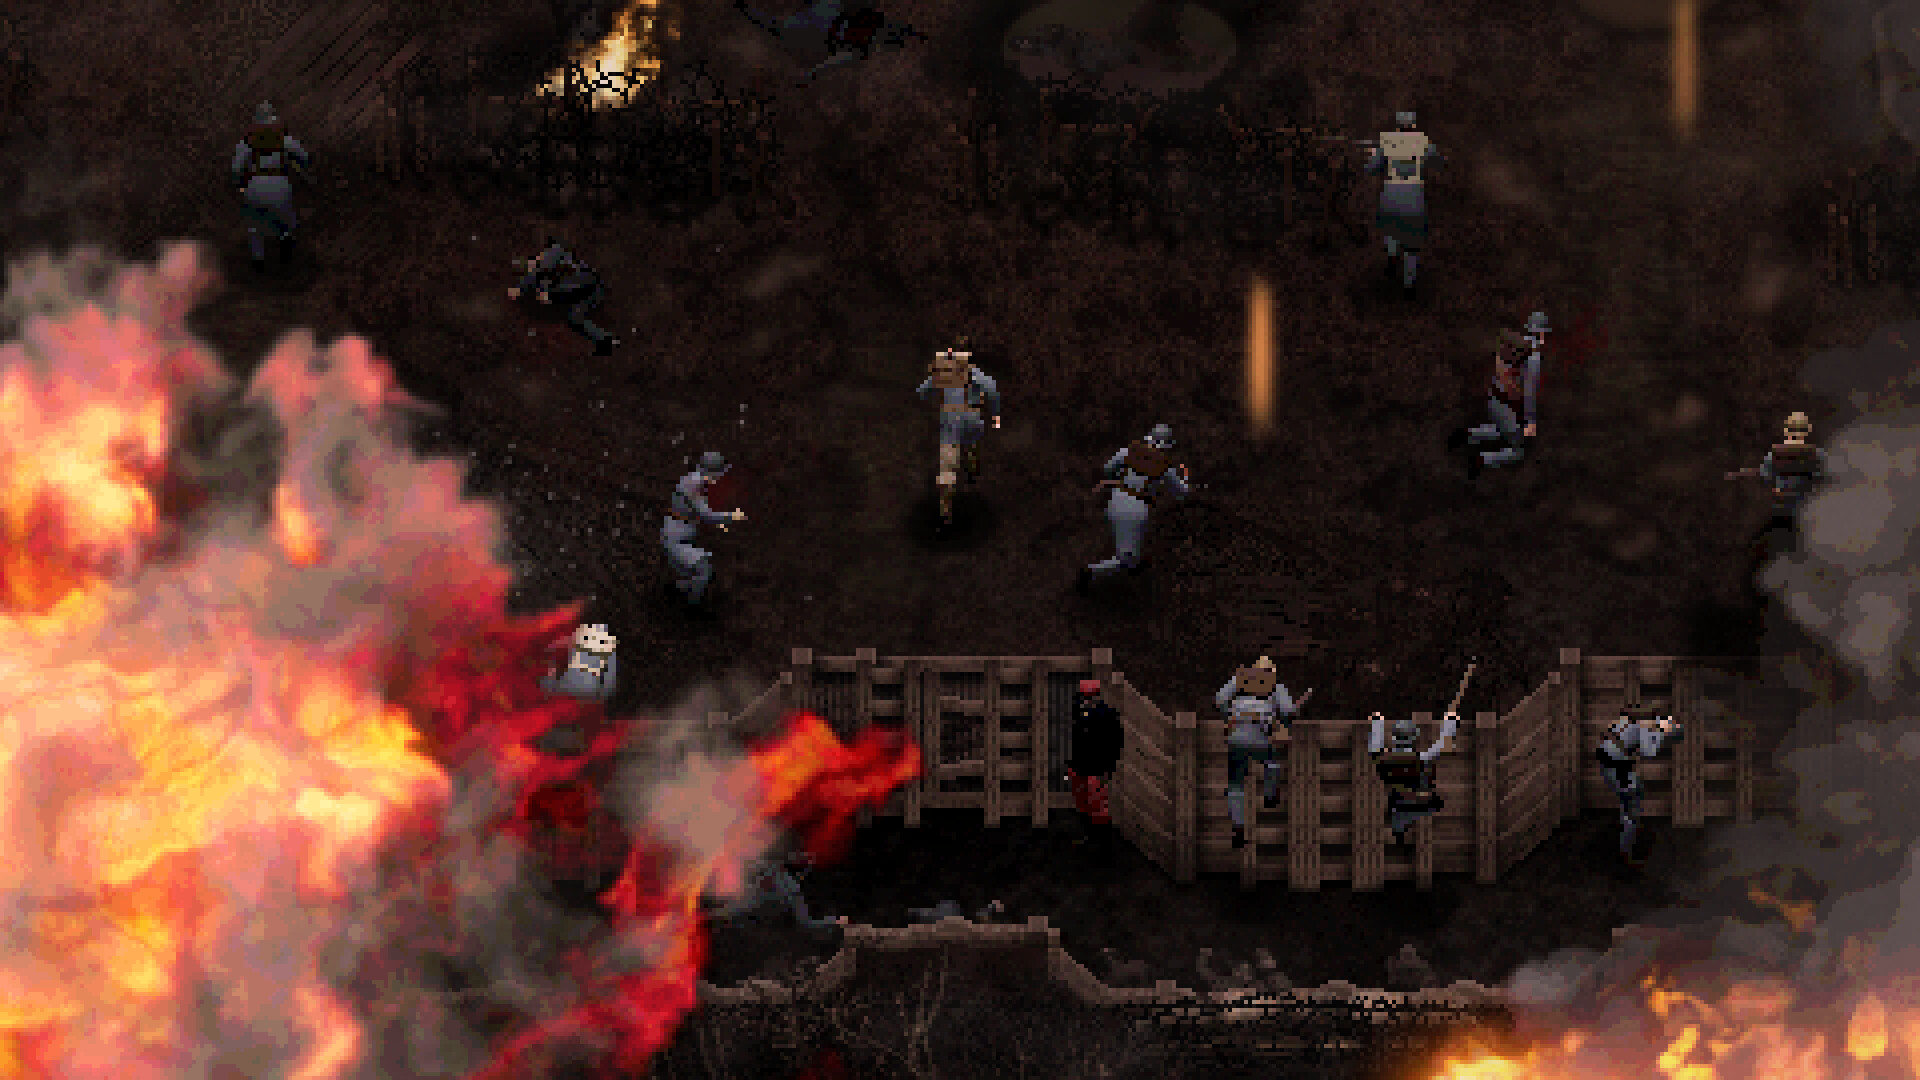 Juego de terror Conscript Steam: soldados luchando entre sí en el juego de terror Steam Conscript